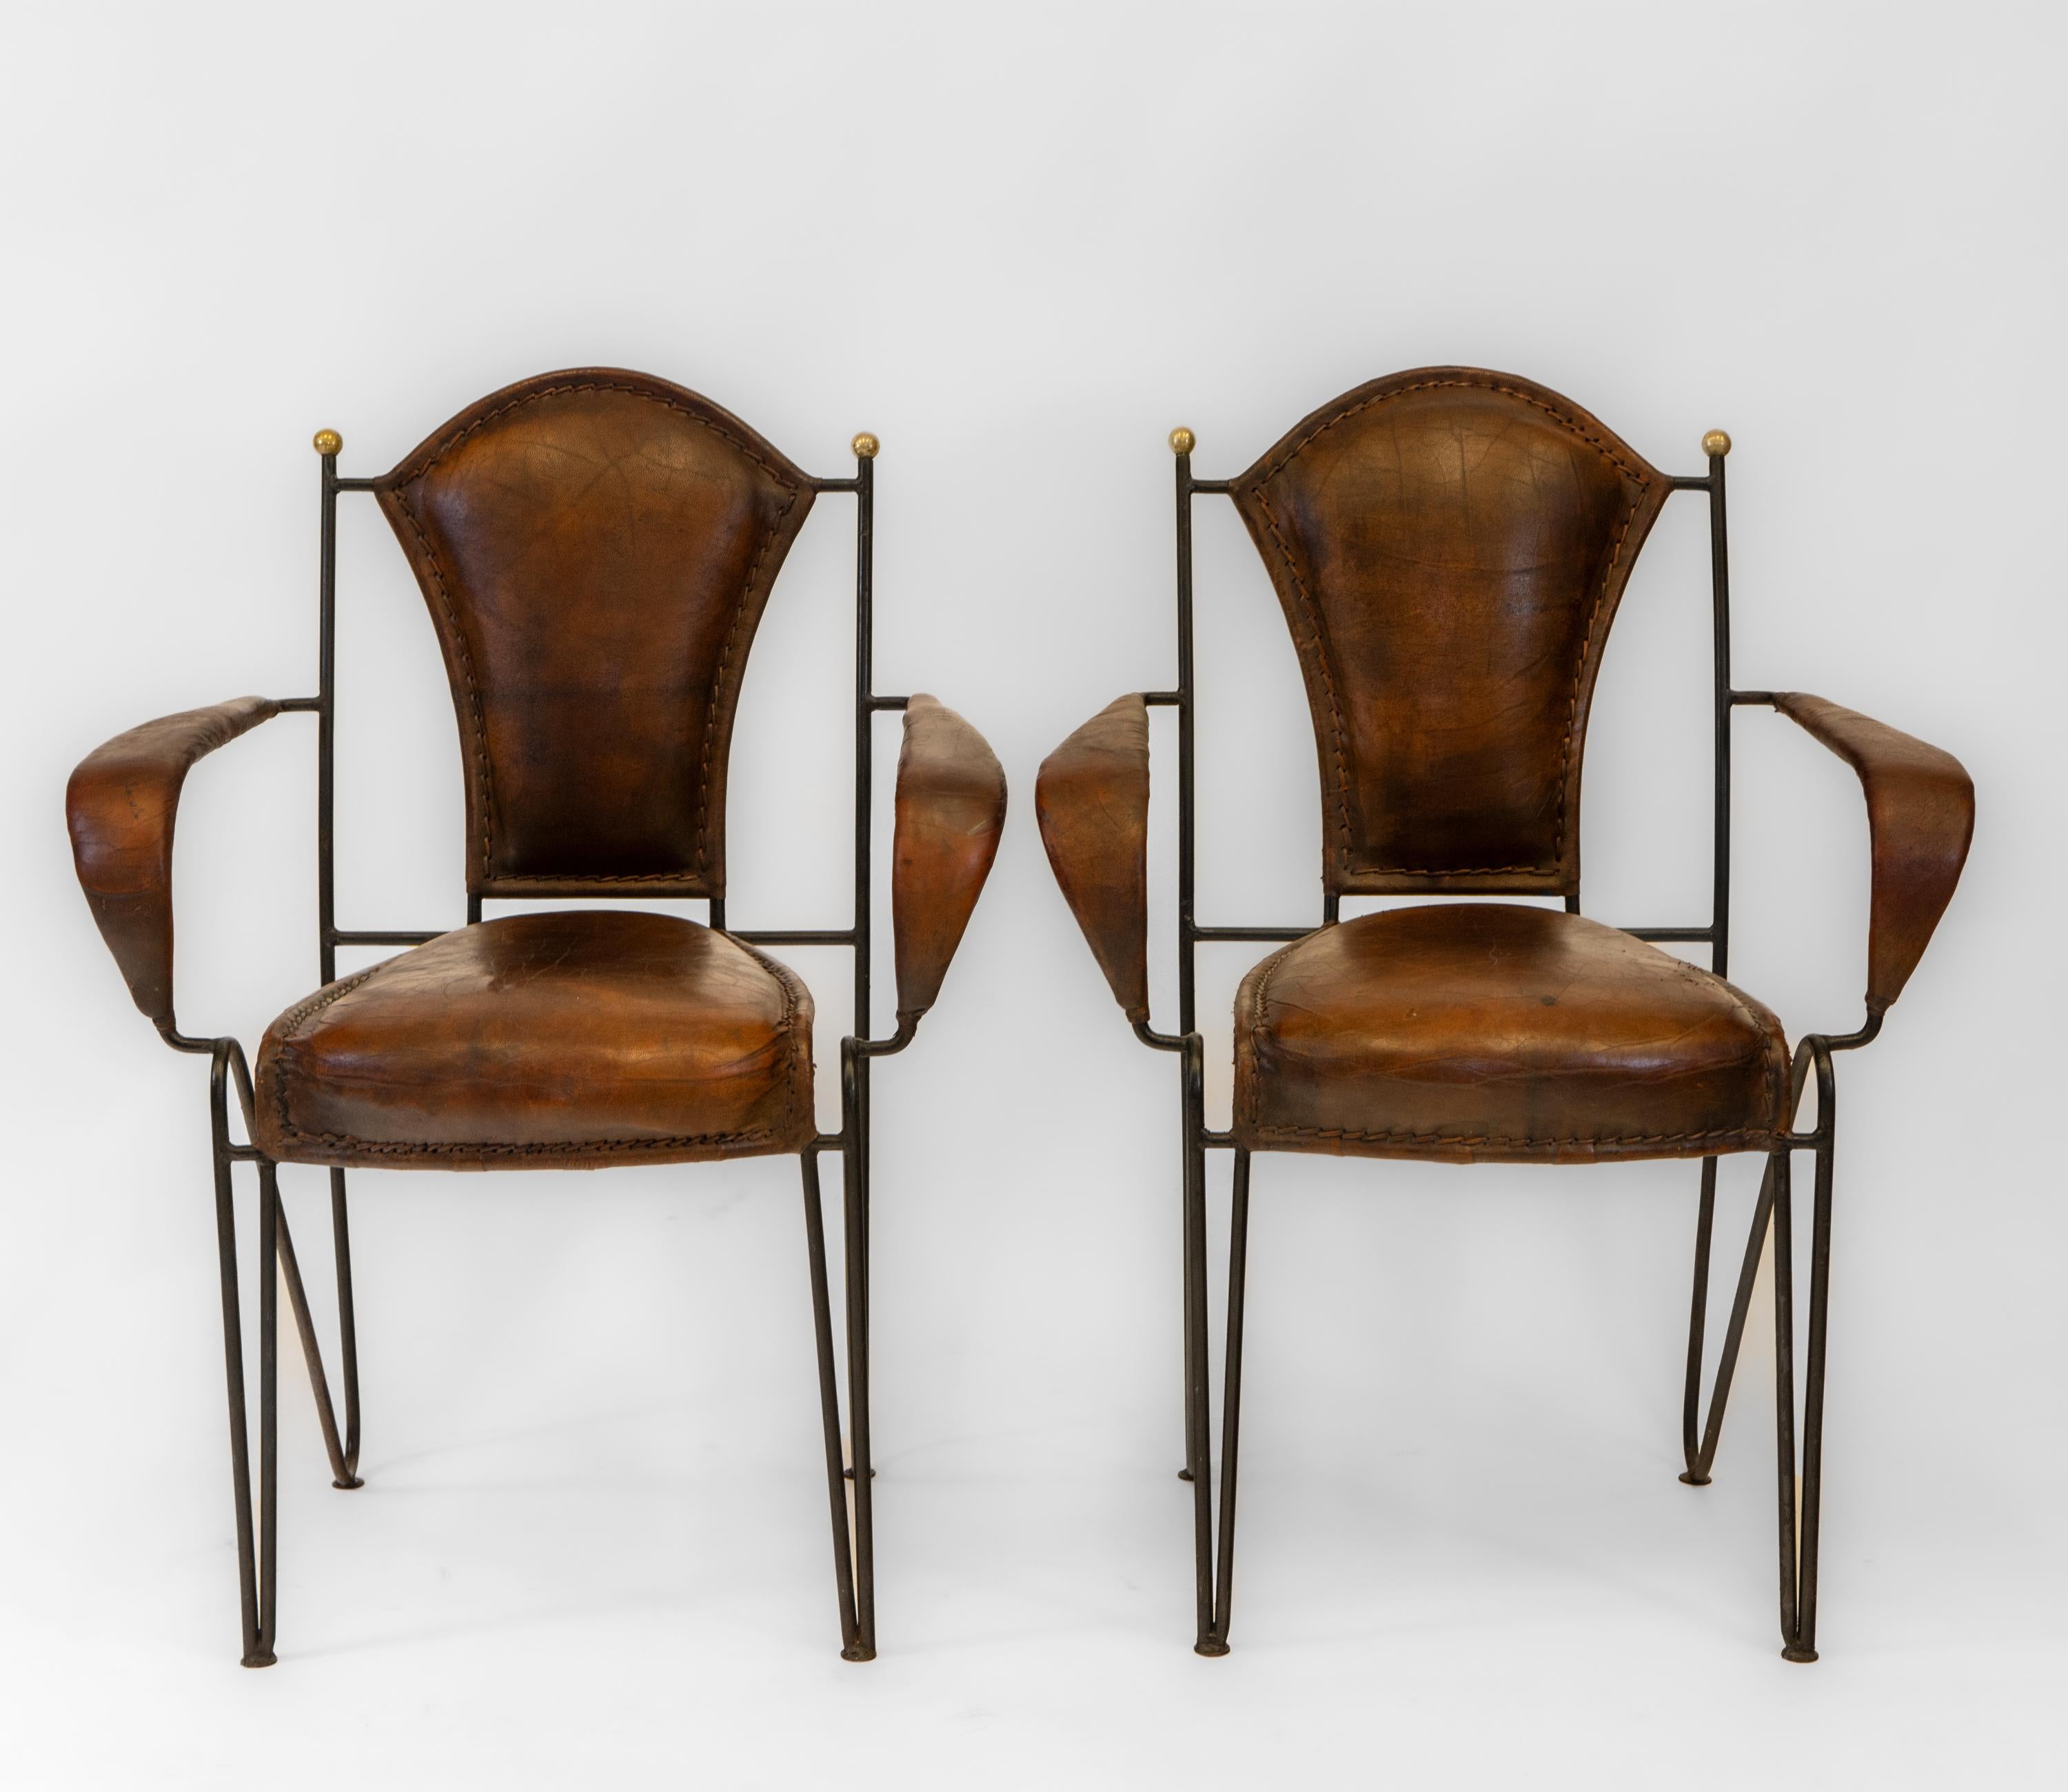 Fabelhaftes Paar französische Sessel aus Leder und Eisen aus der Mitte des Jahrhunderts. Ca. 1950er Jahre.

Ein weiteres Paar ist separat erhältlich, auch als Viererset.

Die Stühle sind mit Messingkugeln ausgestattet, die zu skulpturalen